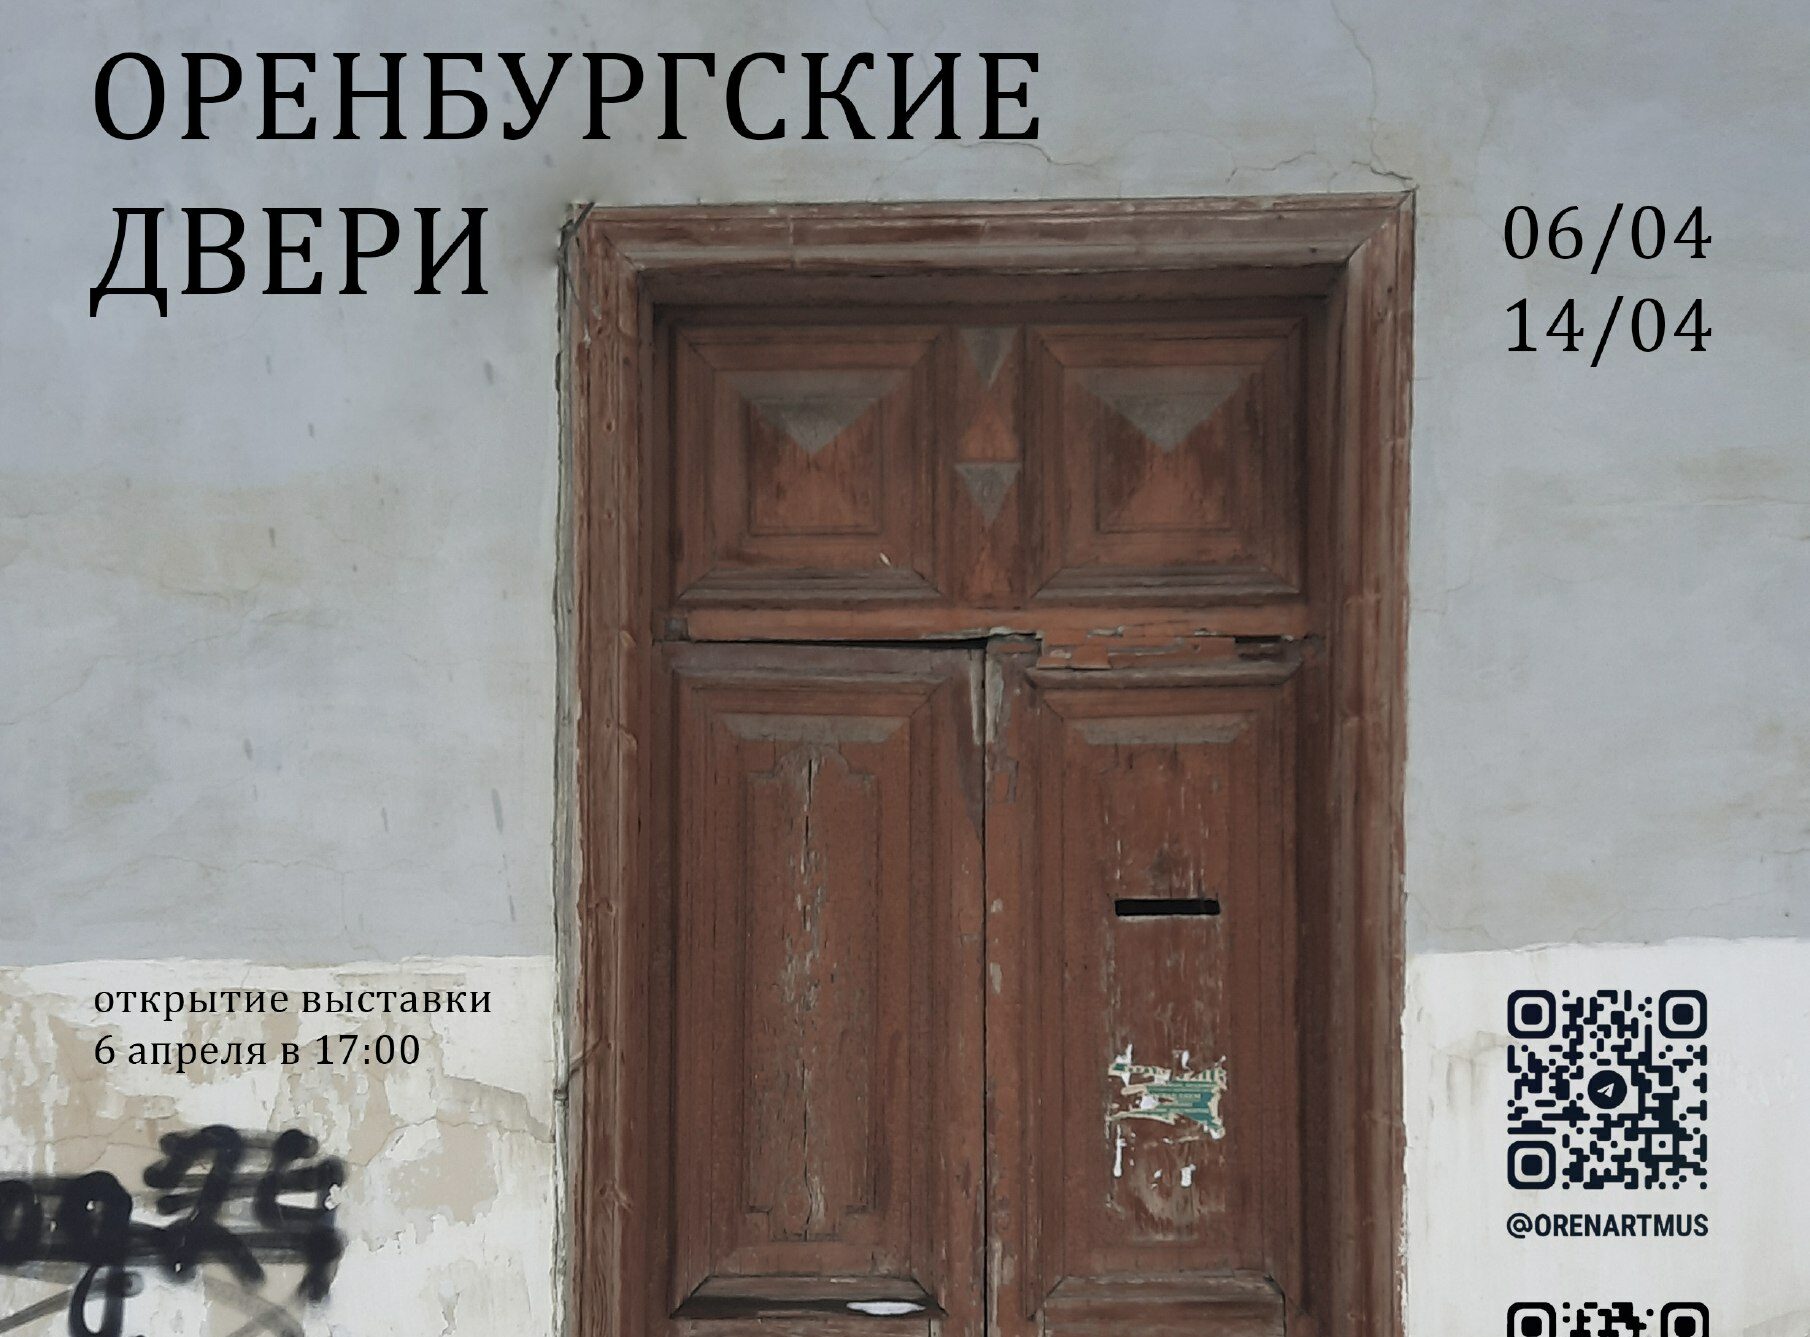 Открыть дверь оренбург. Дореволюционные двери. Двери музея изо Оренбург. Дверь дореволюционная одинарная. Необычная выставка дверей.